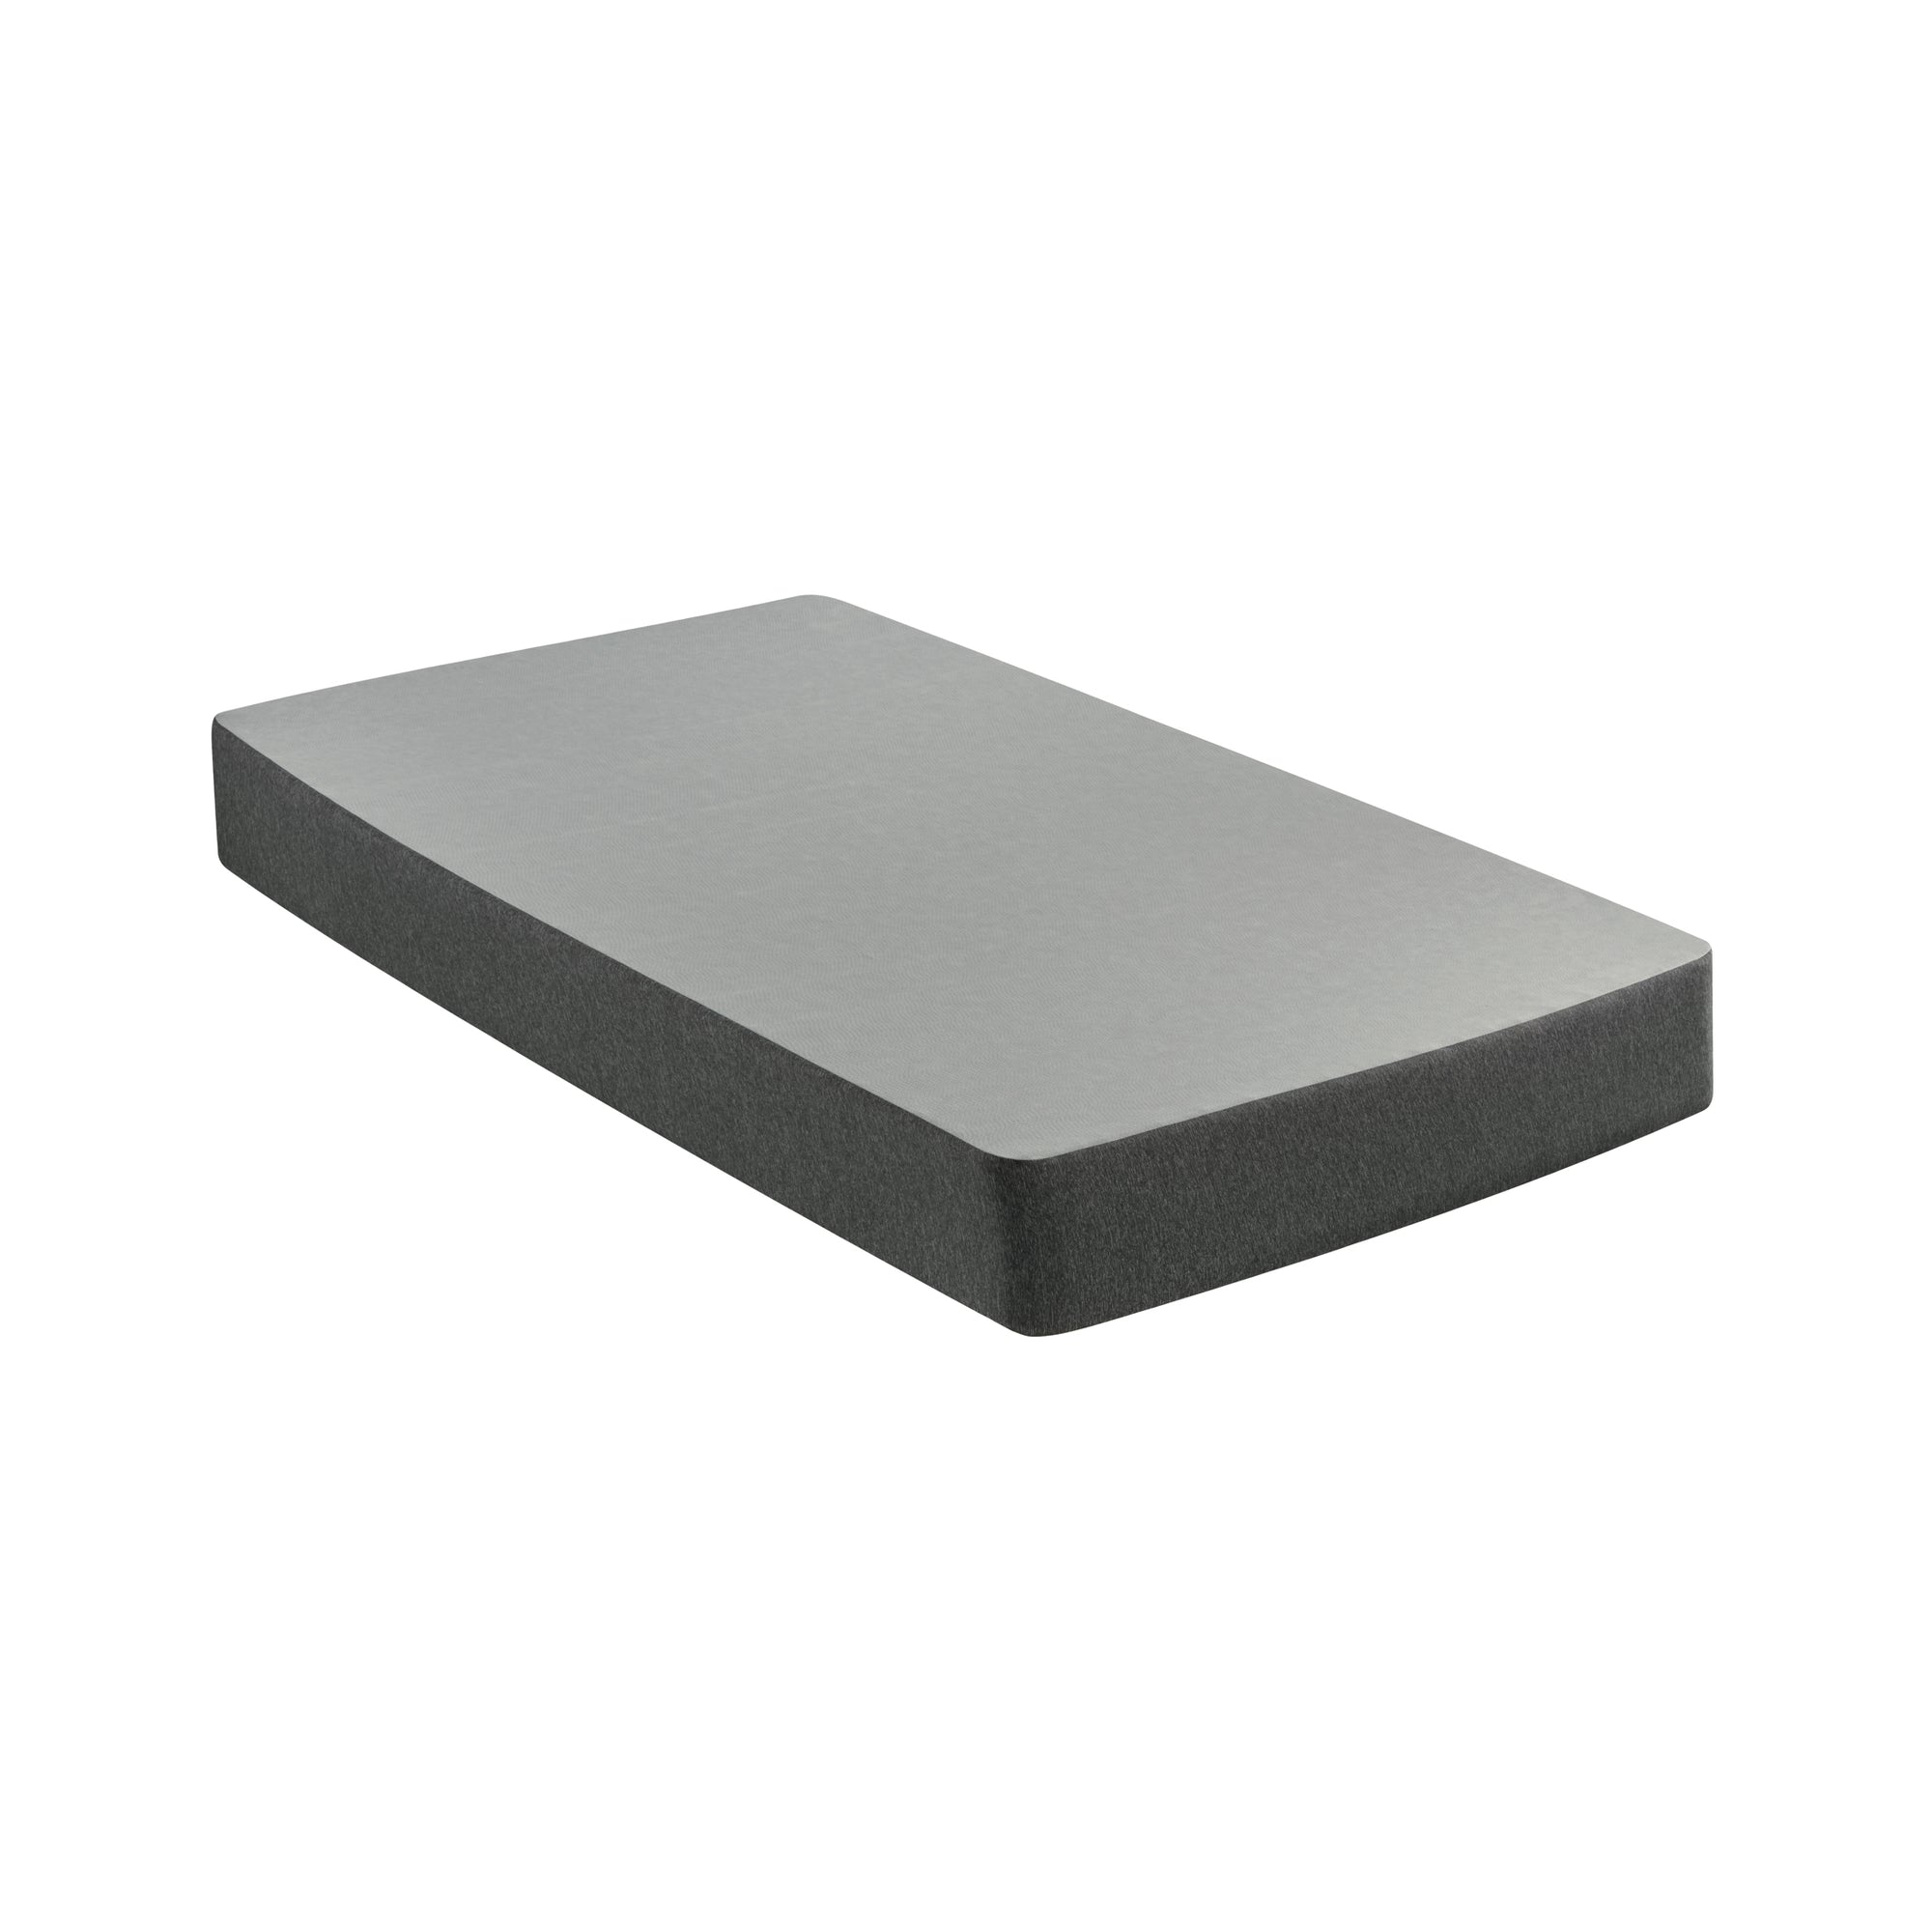 The Beautyrest flat foundation mattress